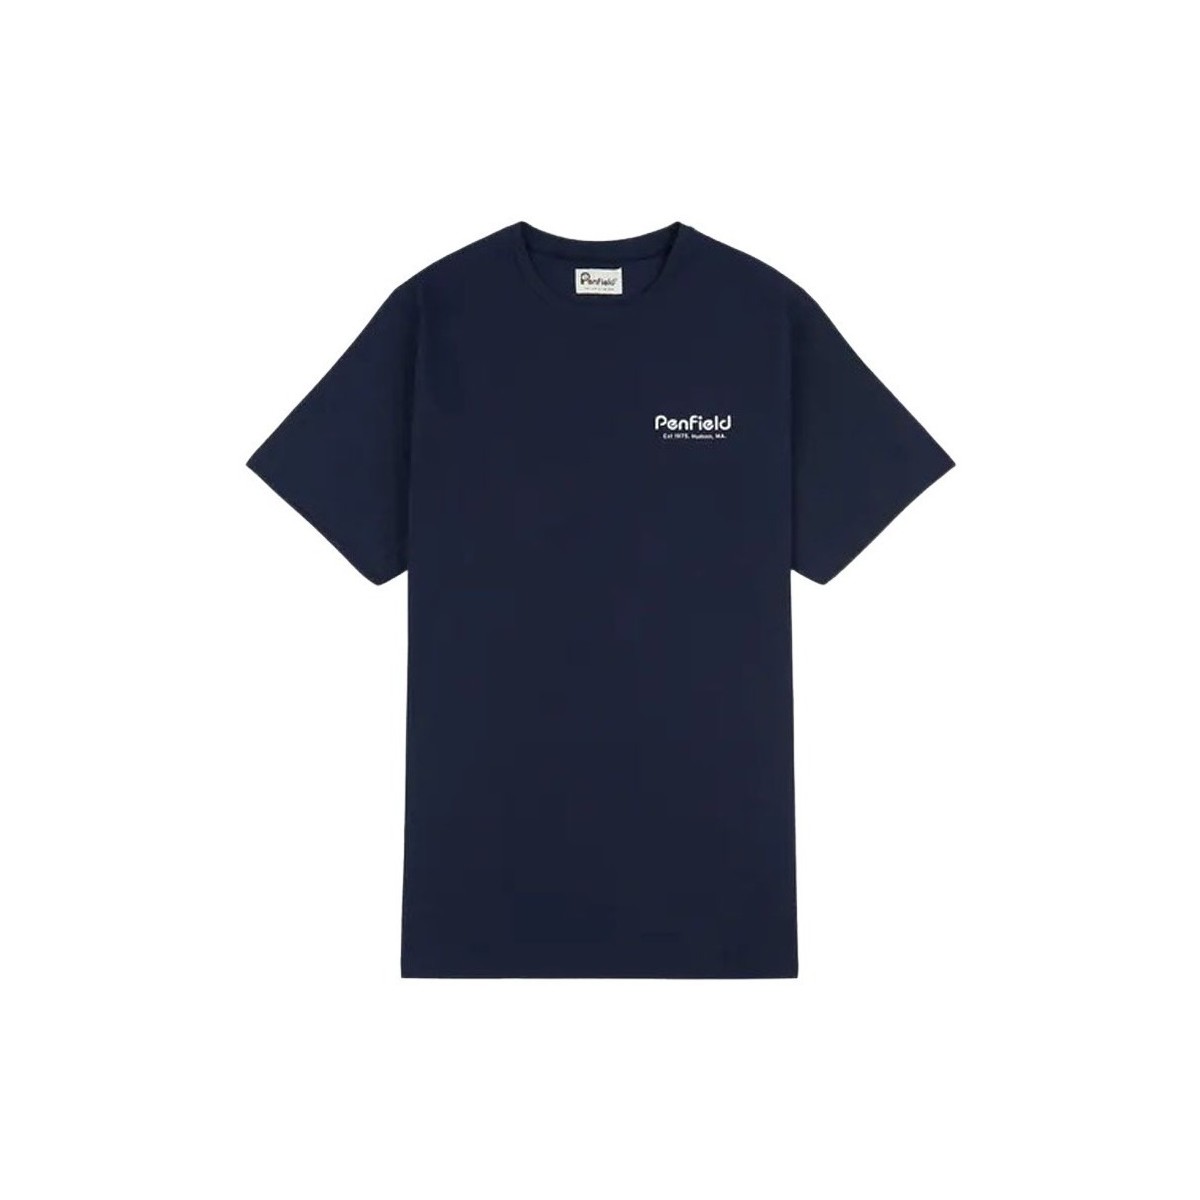 Textiel Heren T-shirts korte mouwen Penfield T-shirt  Hudson Script Blauw